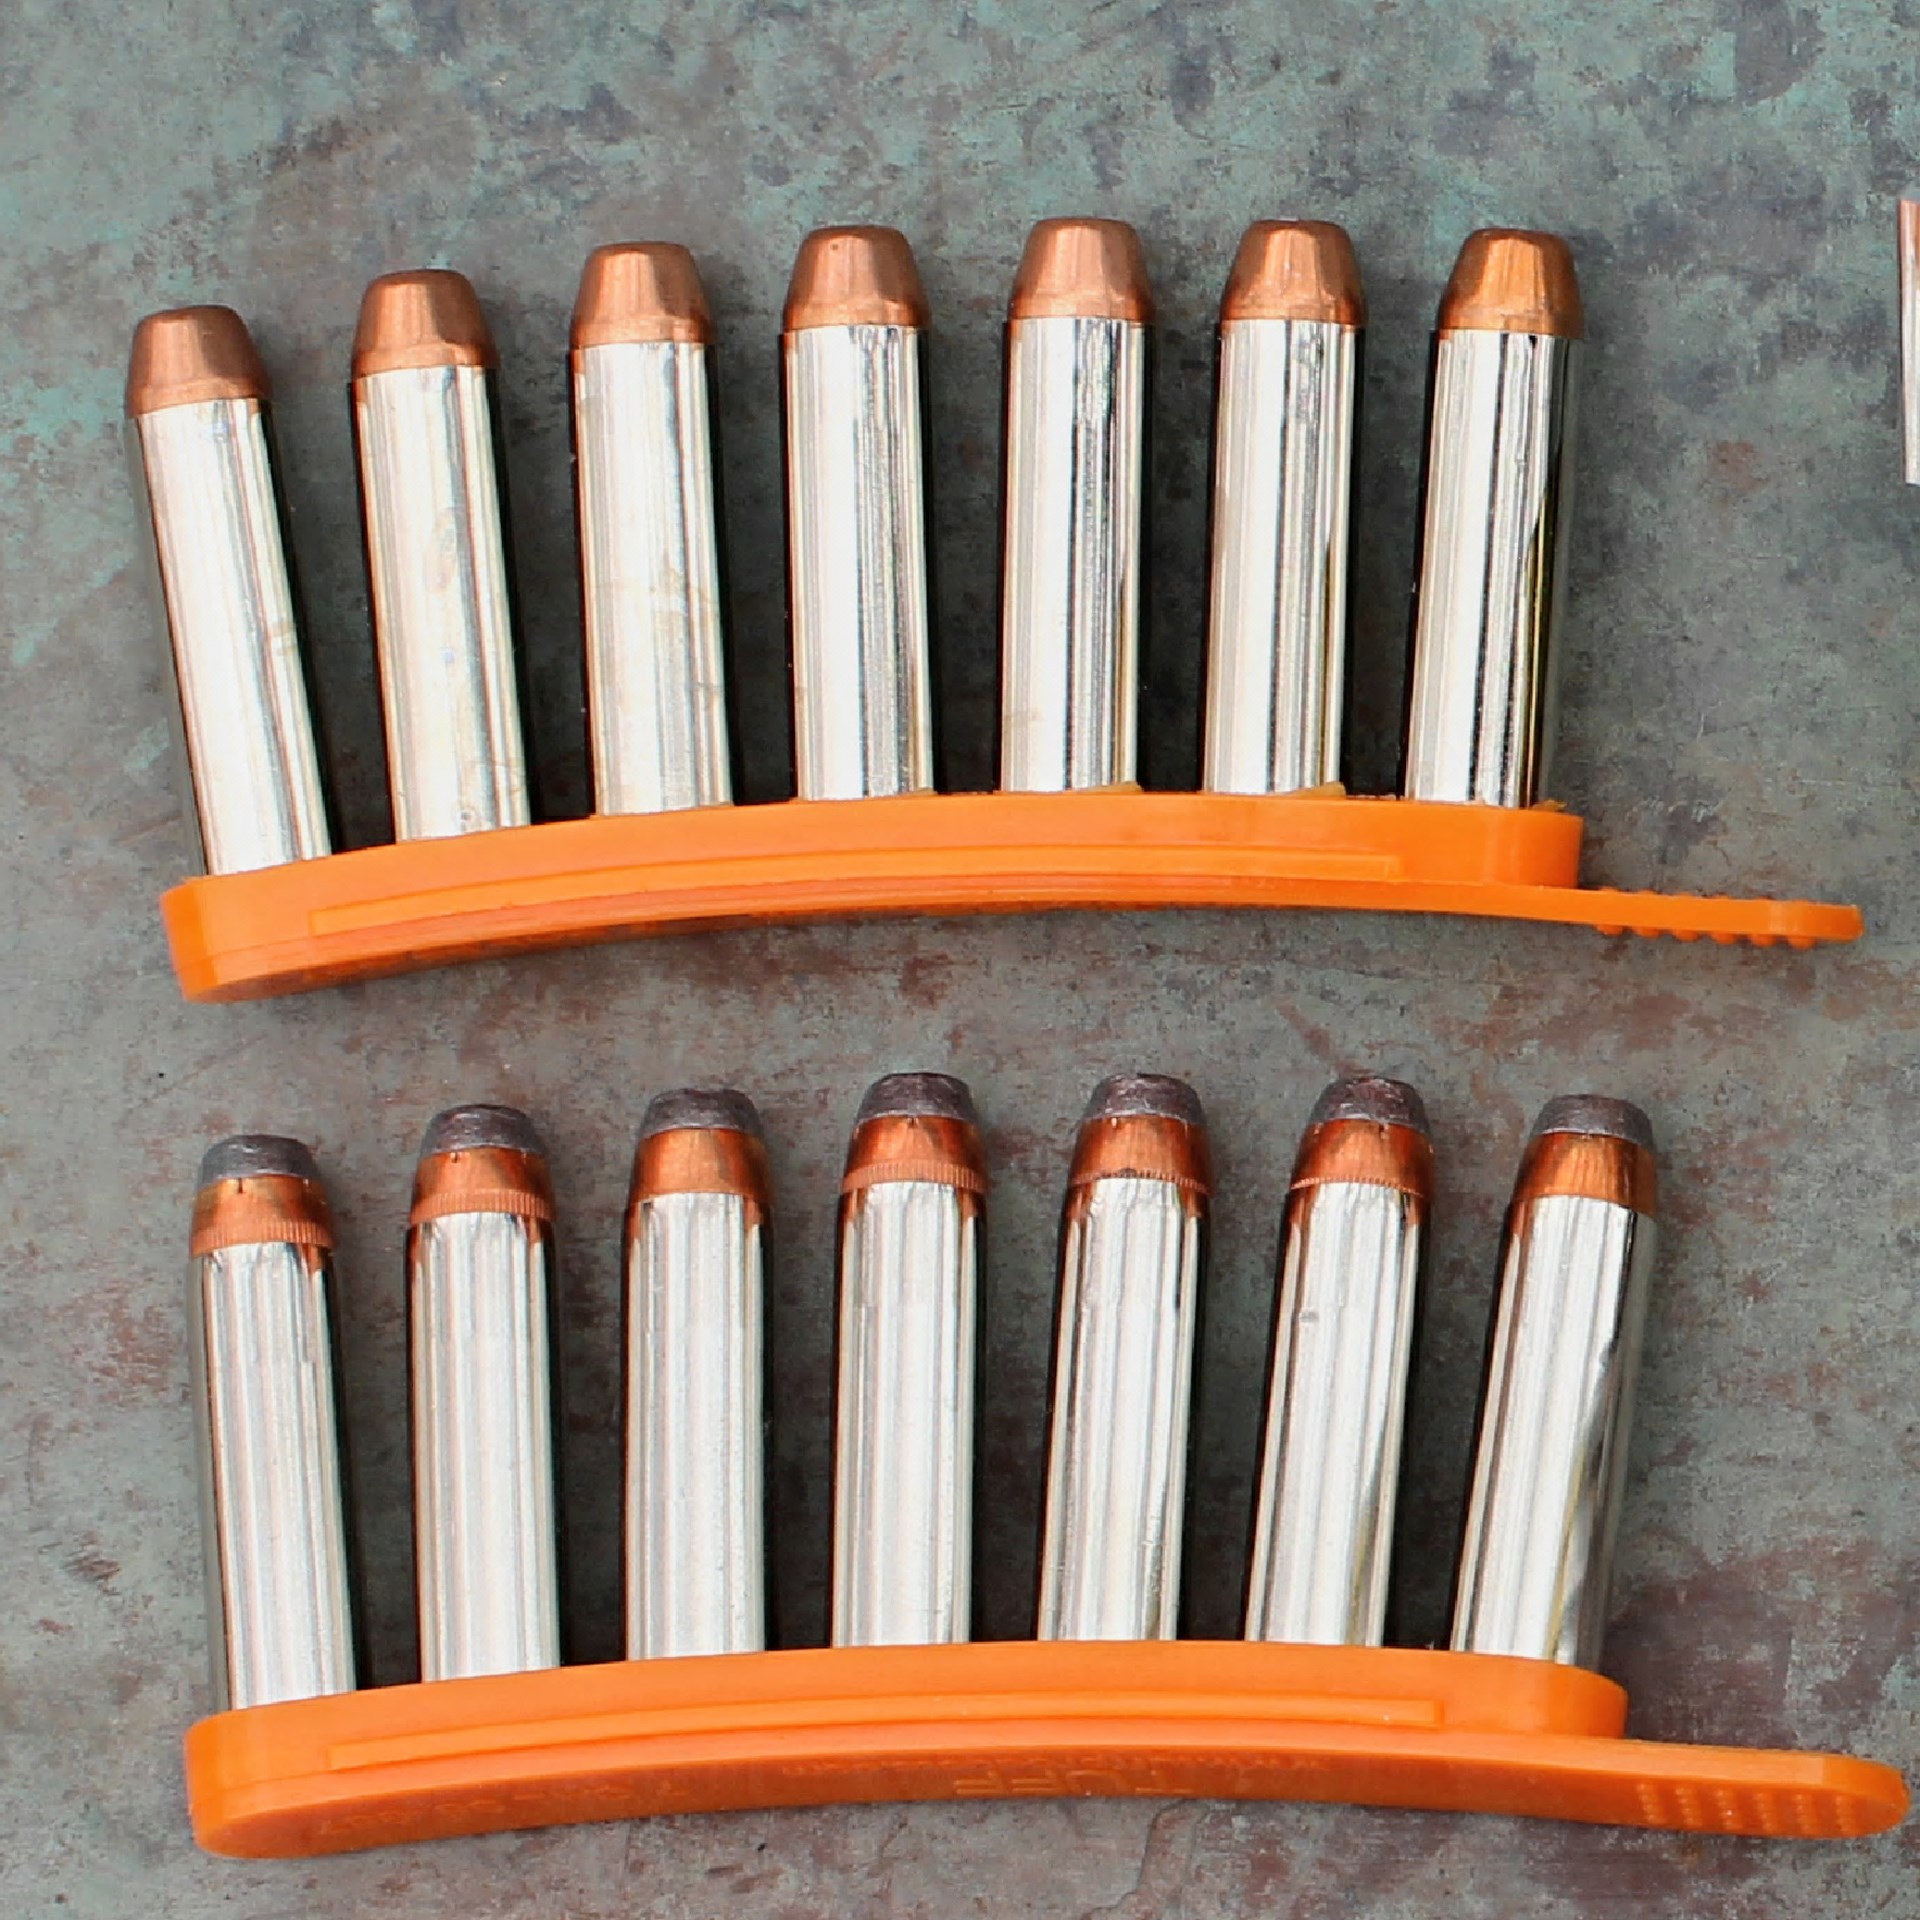 Quickstrips speedloader strips ammunition orange plastic